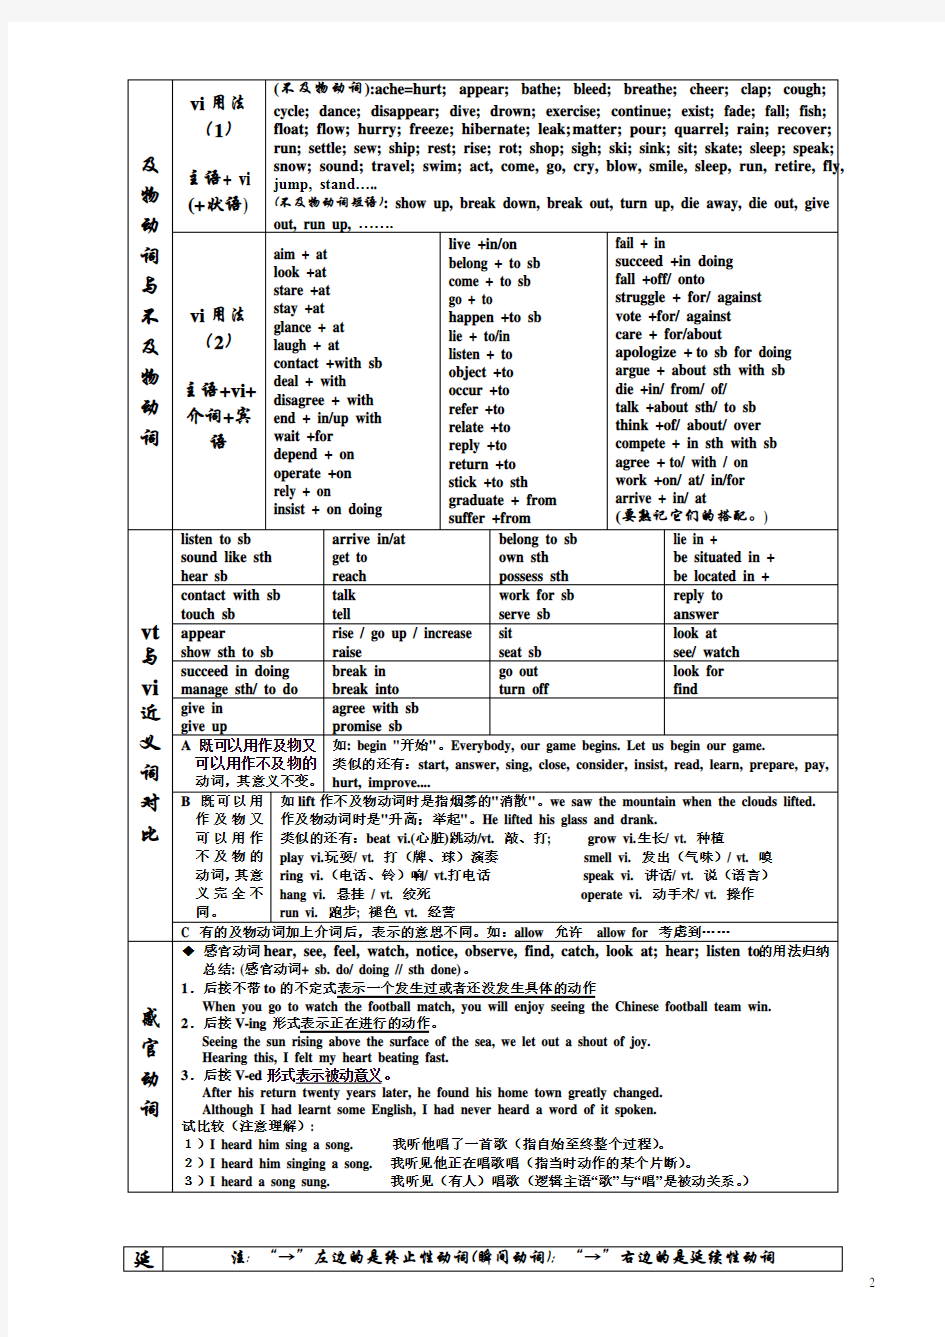 英语动词分类表